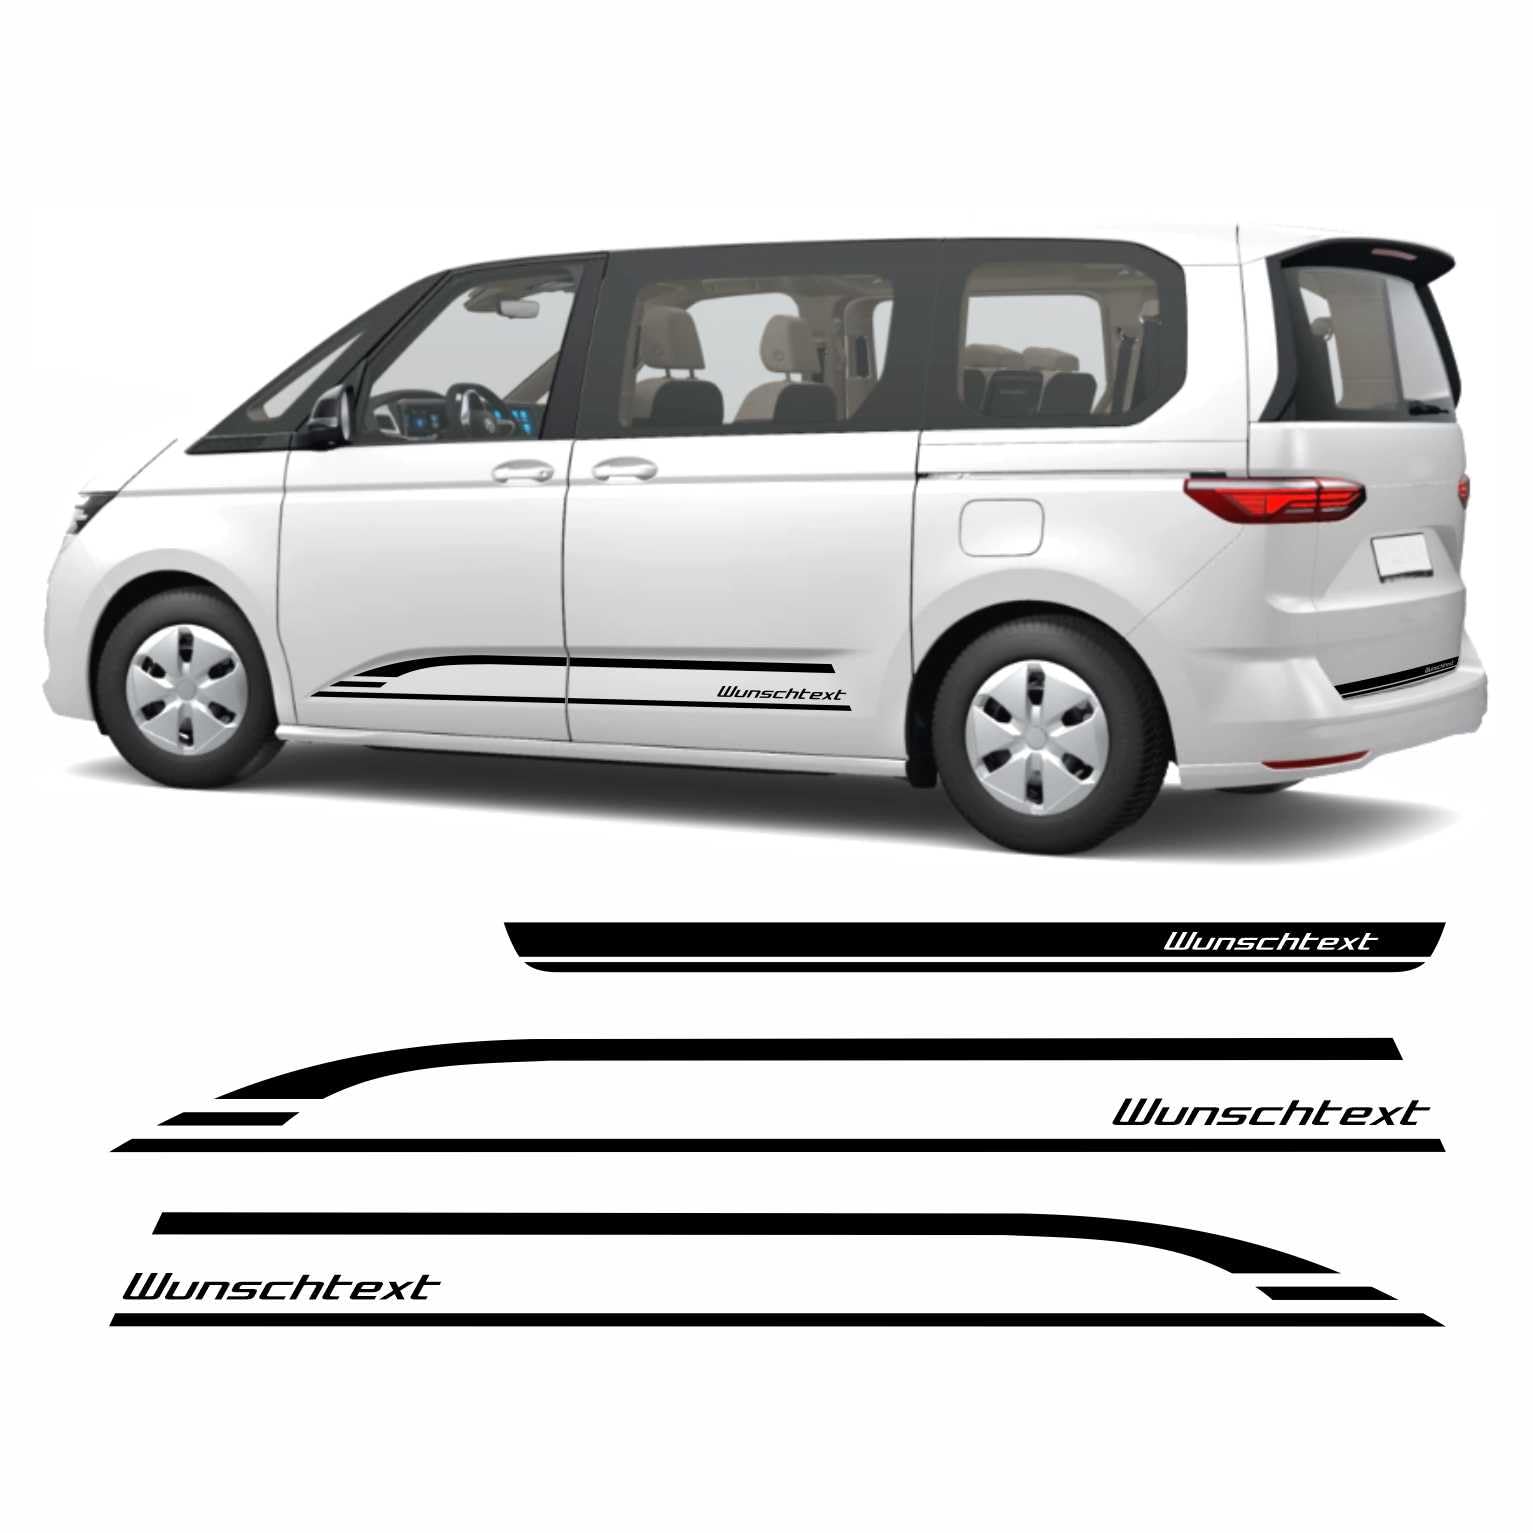 FOTOFOL Seitenstreifen Edition mit Wunschtext passend für VW T7 Multivan von FOTOFOL